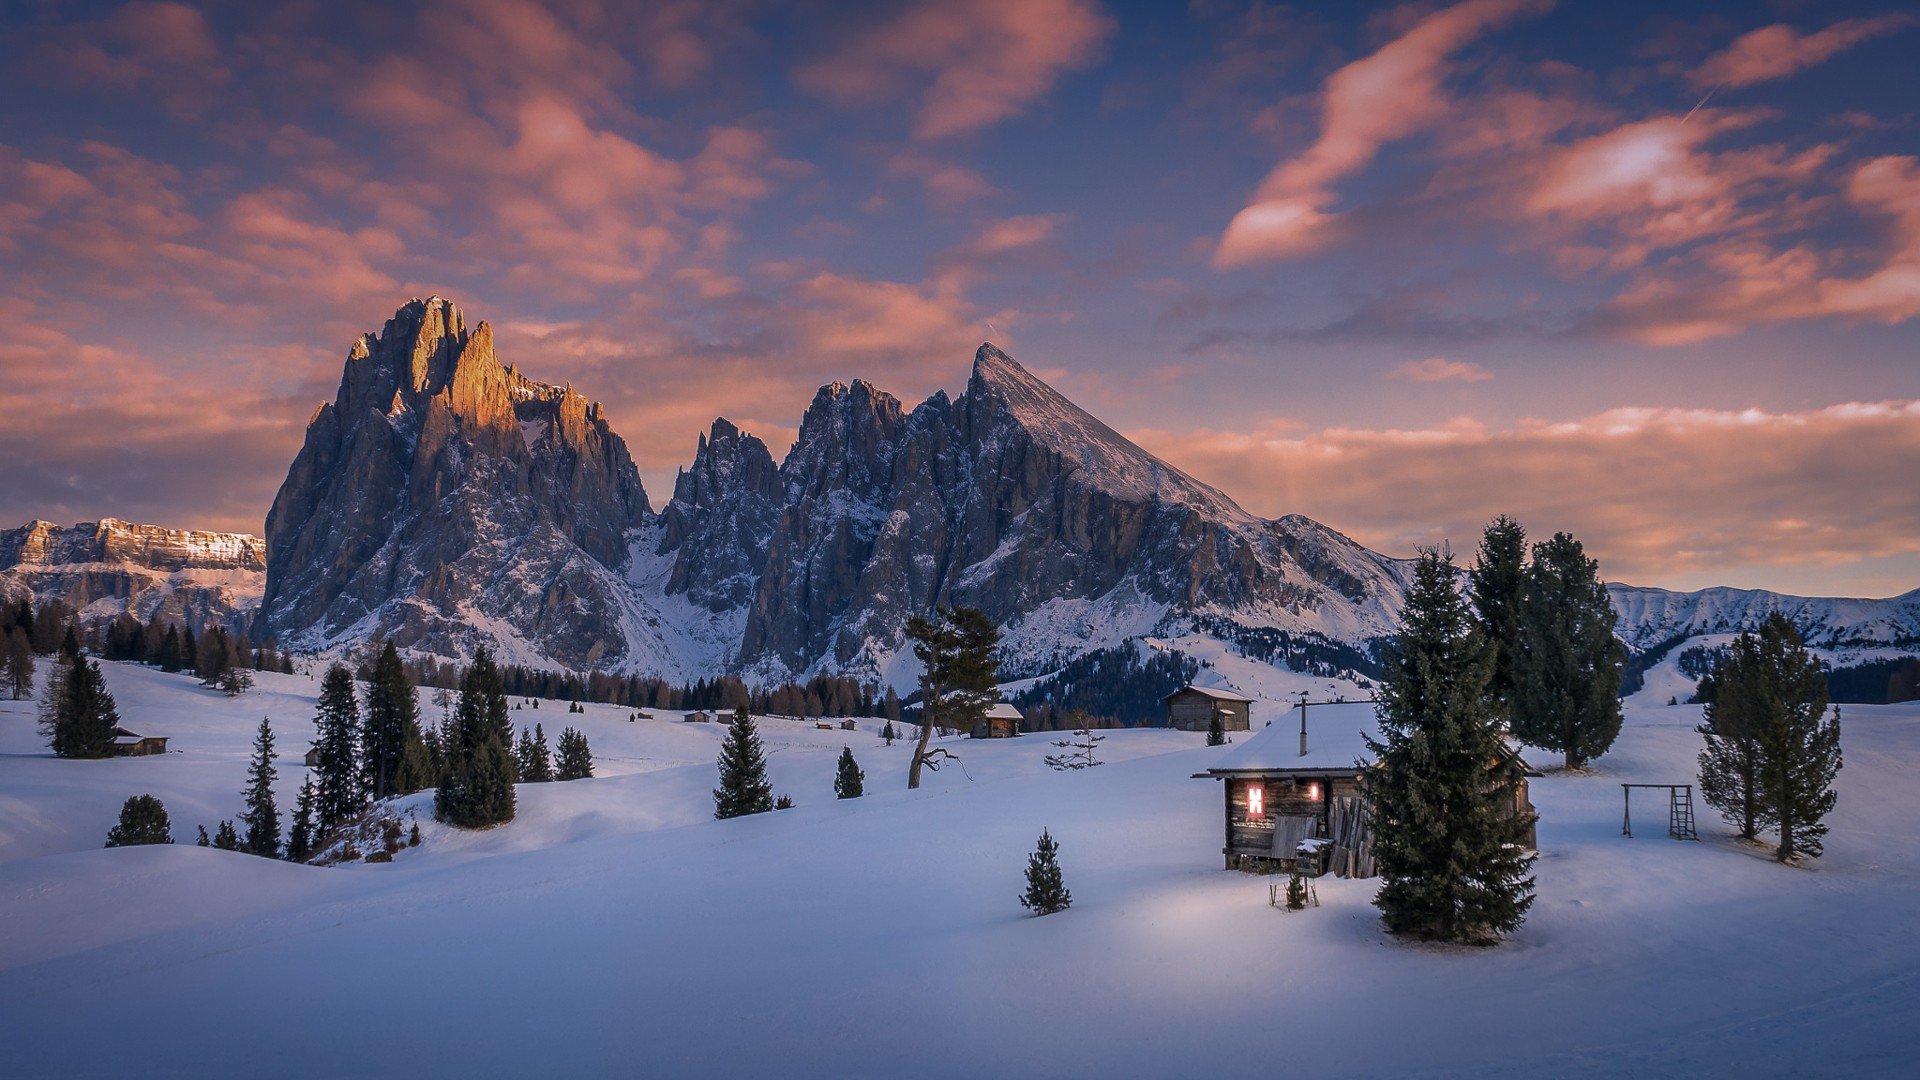 snow, Cabin, Mountains, Dolomites (mountains), Italy, Pine trees